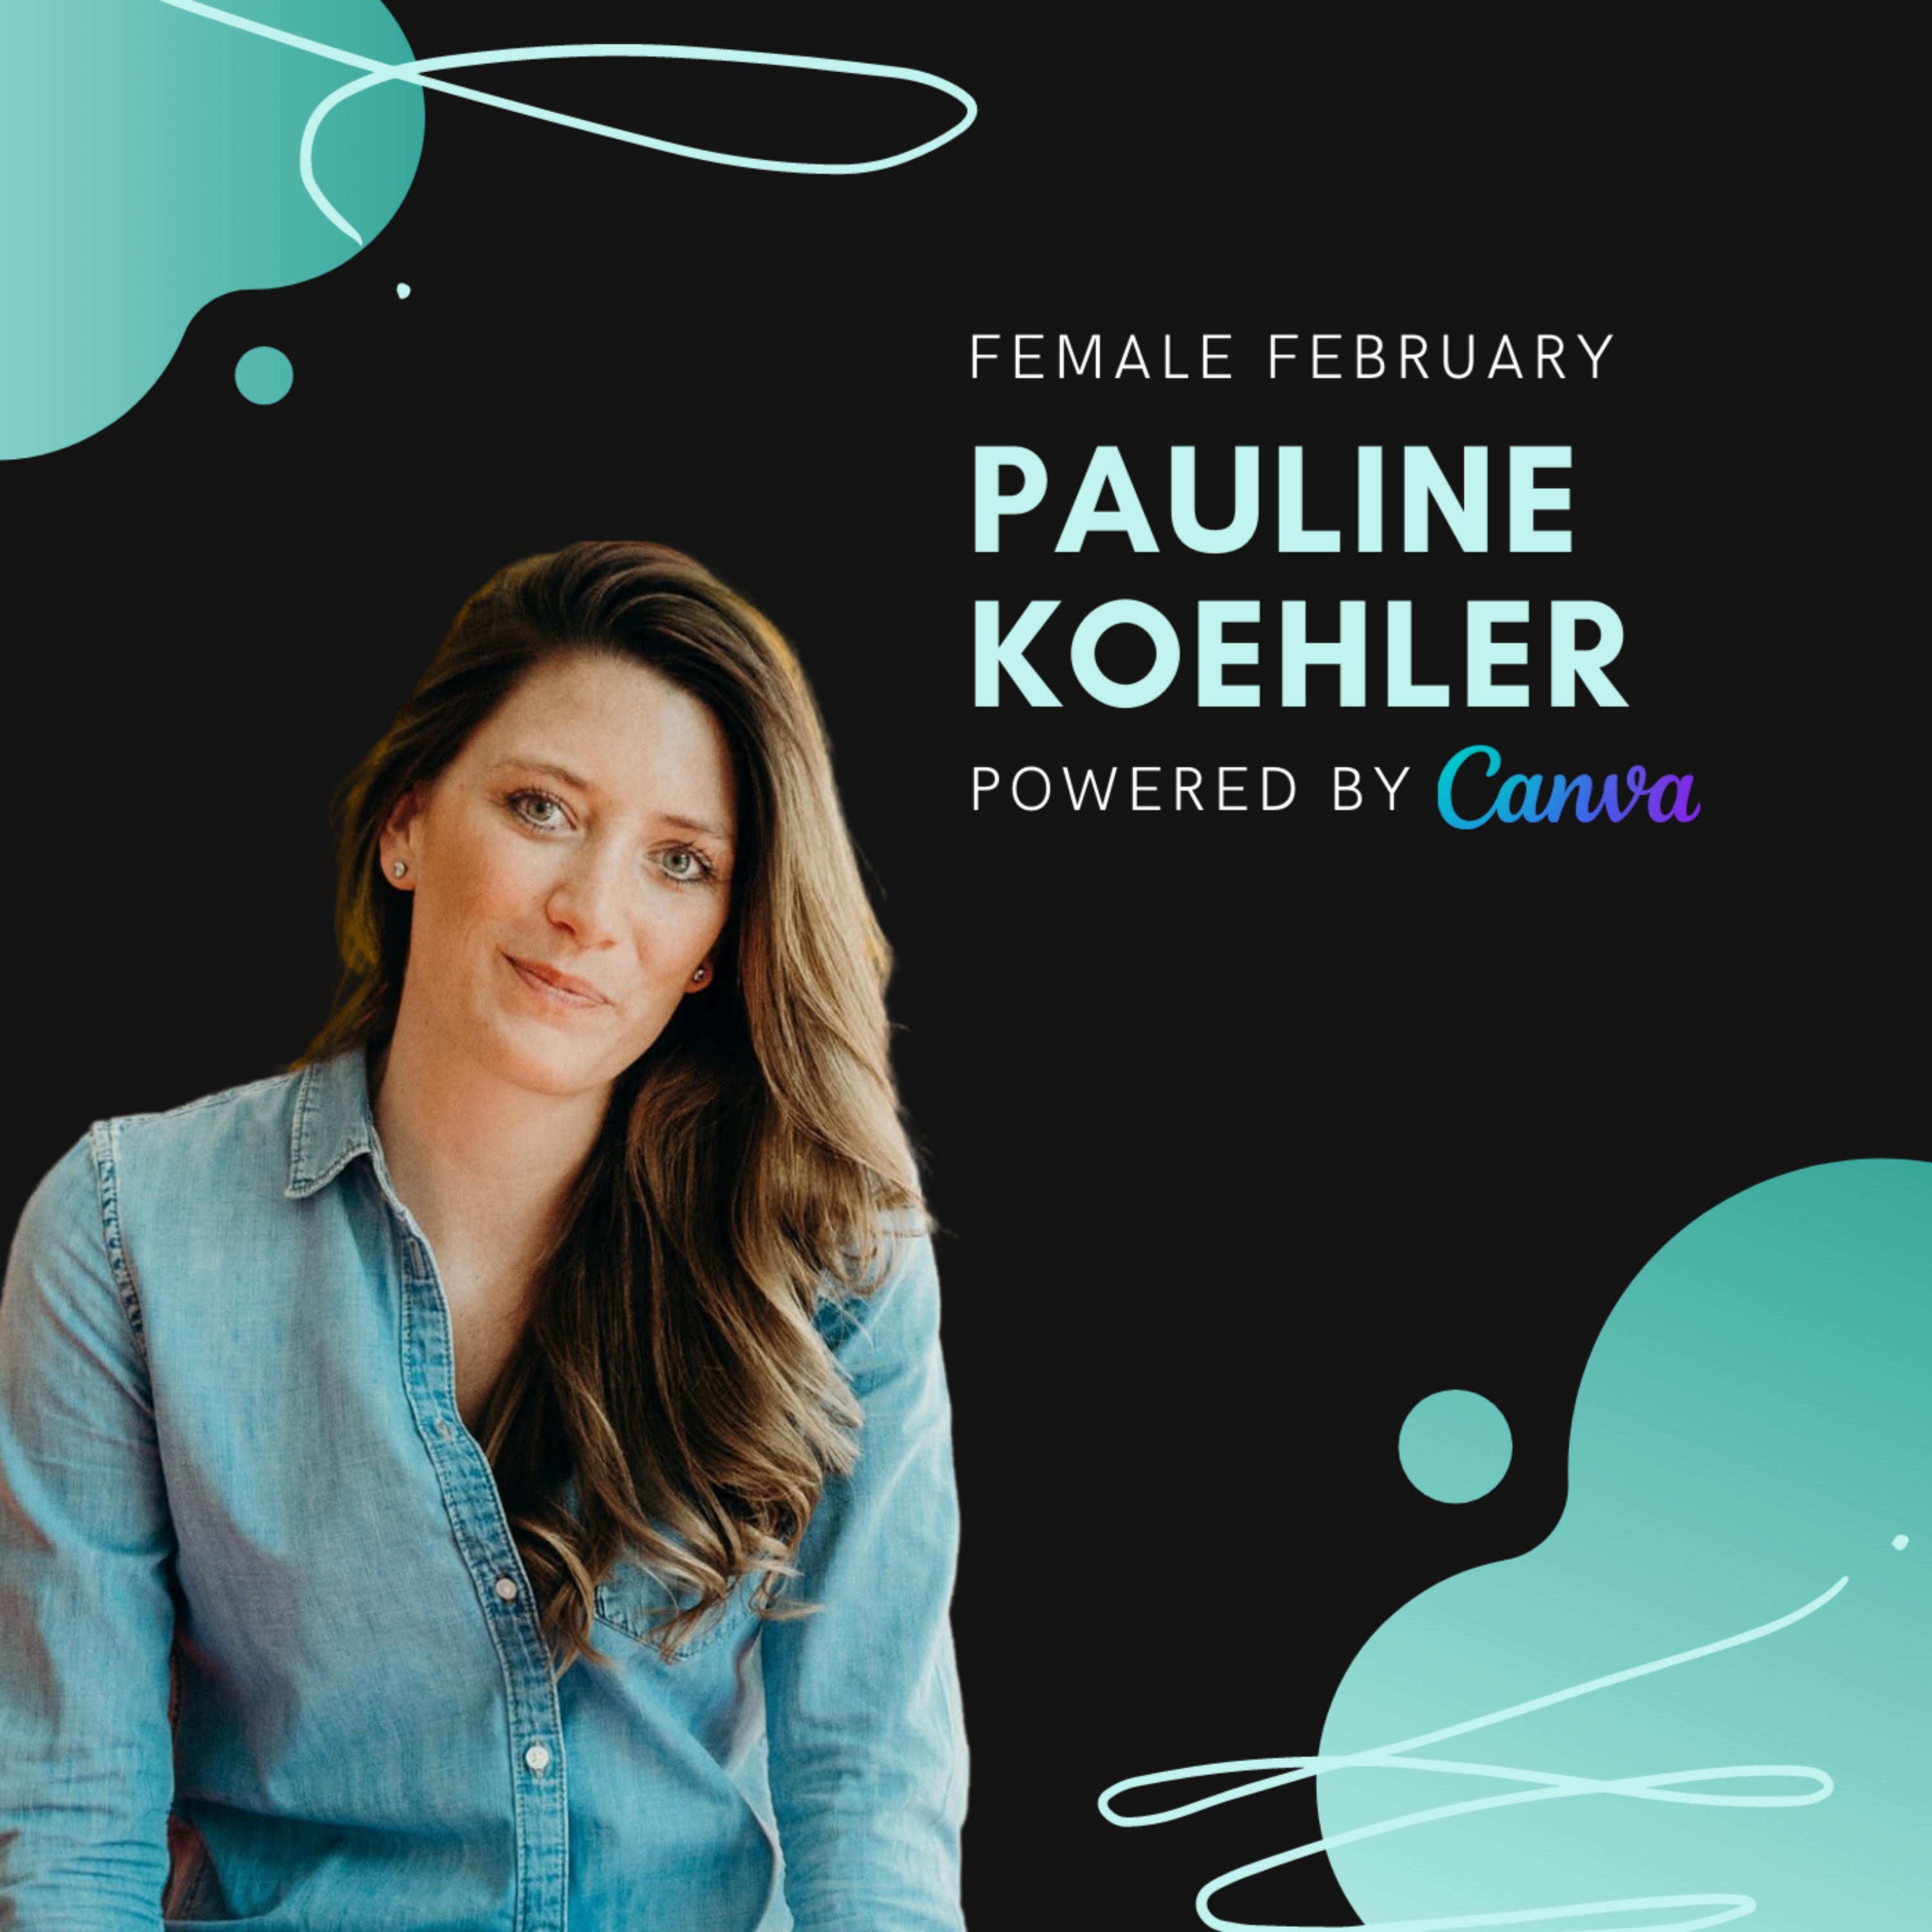 Pauline Koehler, WeddyPlace | Female February Image